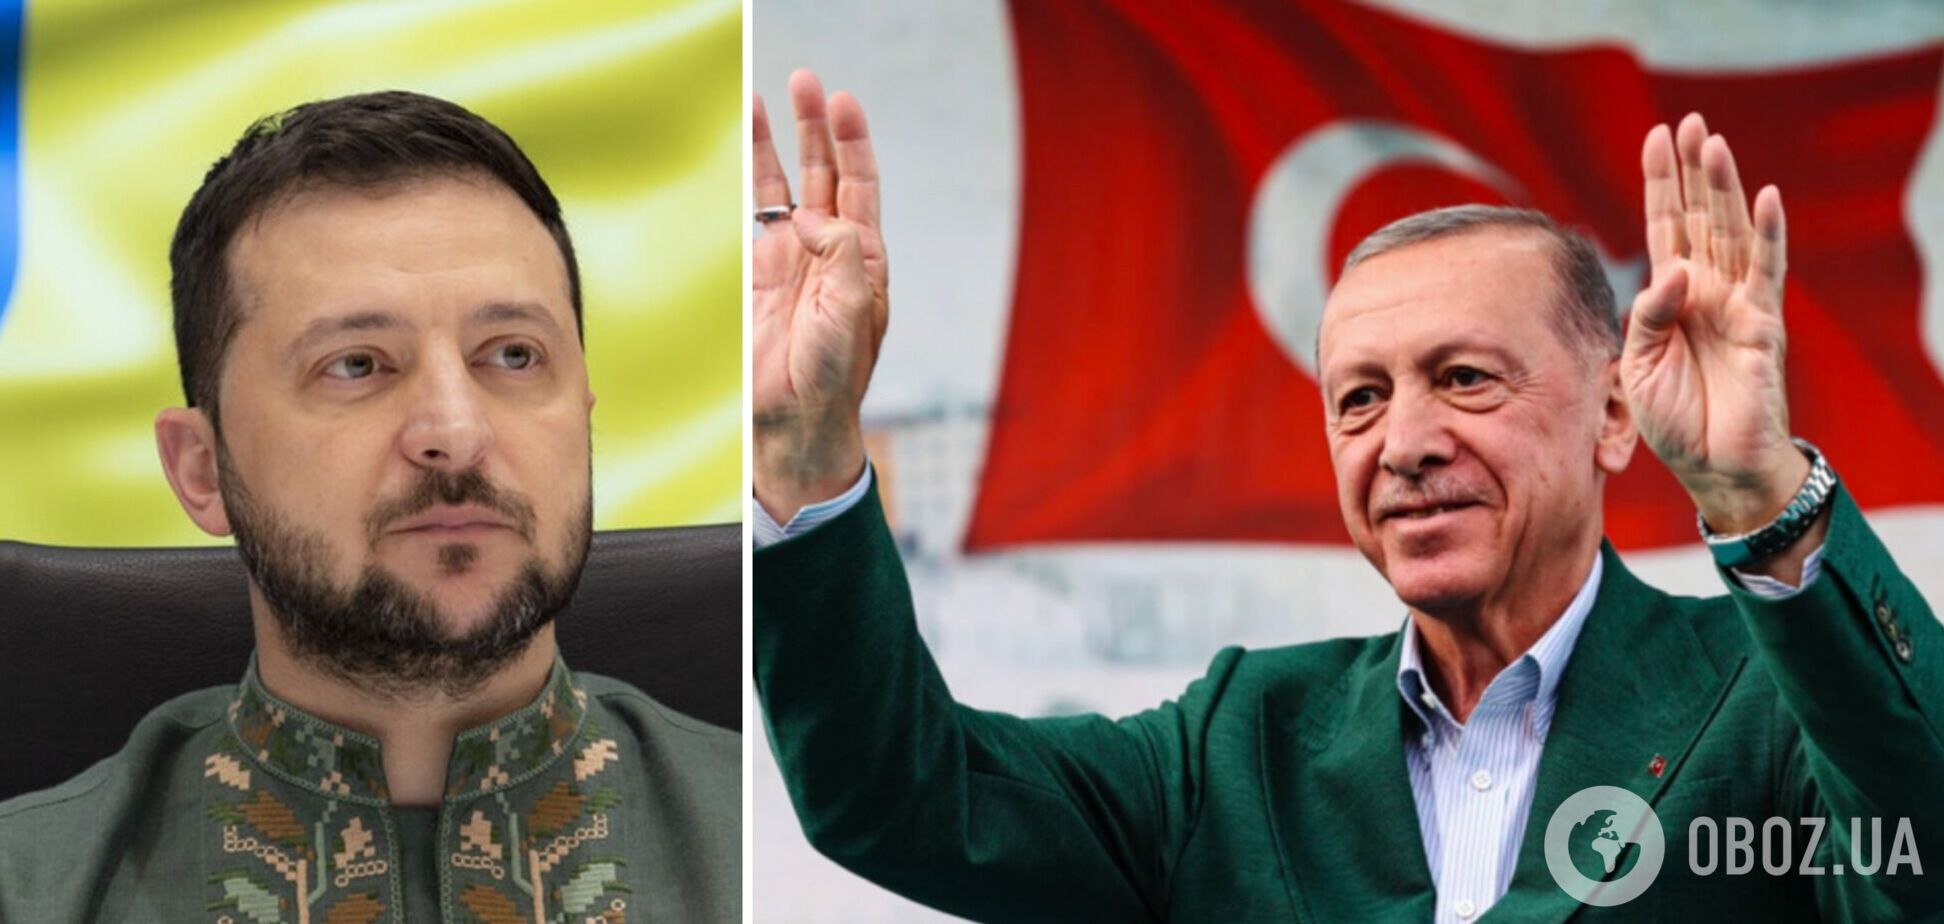 'Сотрудничество Украины и Турции важно': Зеленский поздравил Эрдогана с победой в президентских выборах